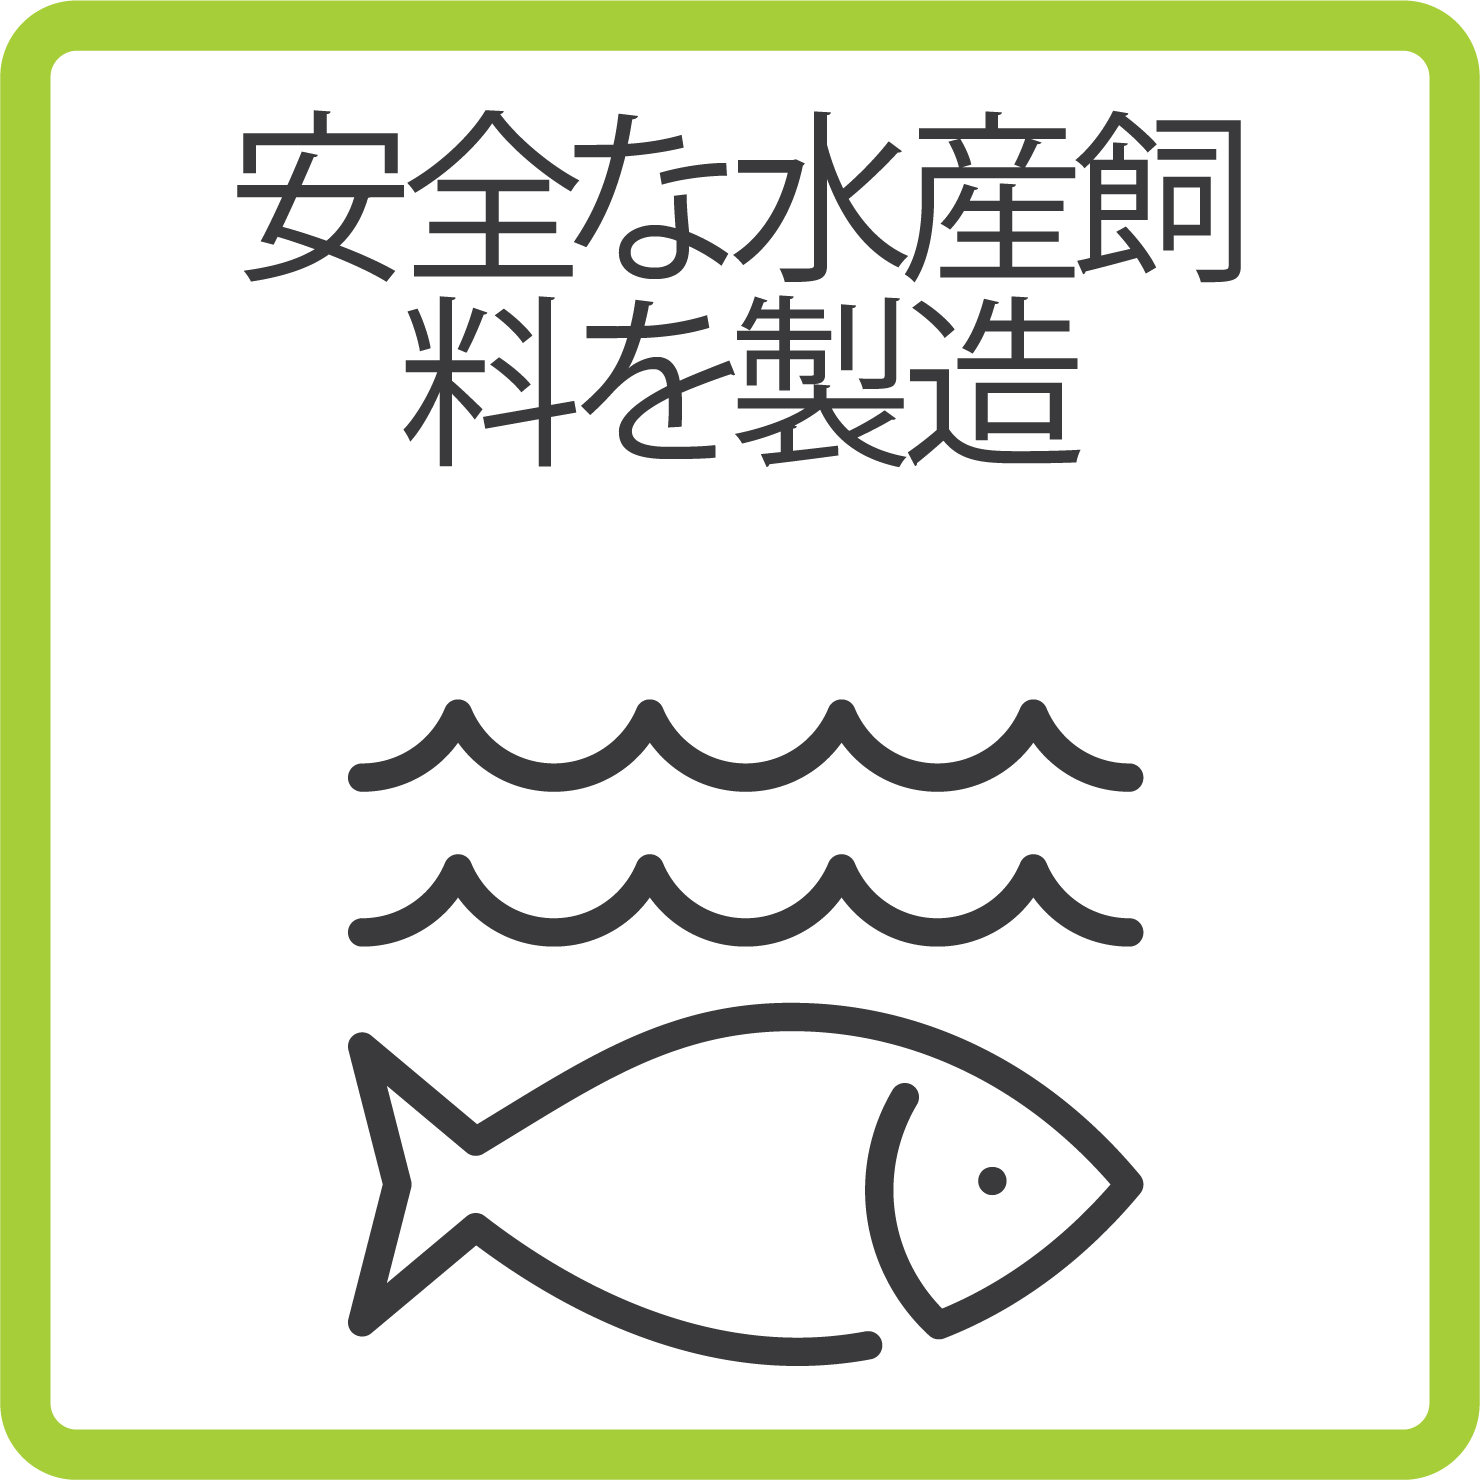 Sustainability_Producing safe aqua feed_B_japanese